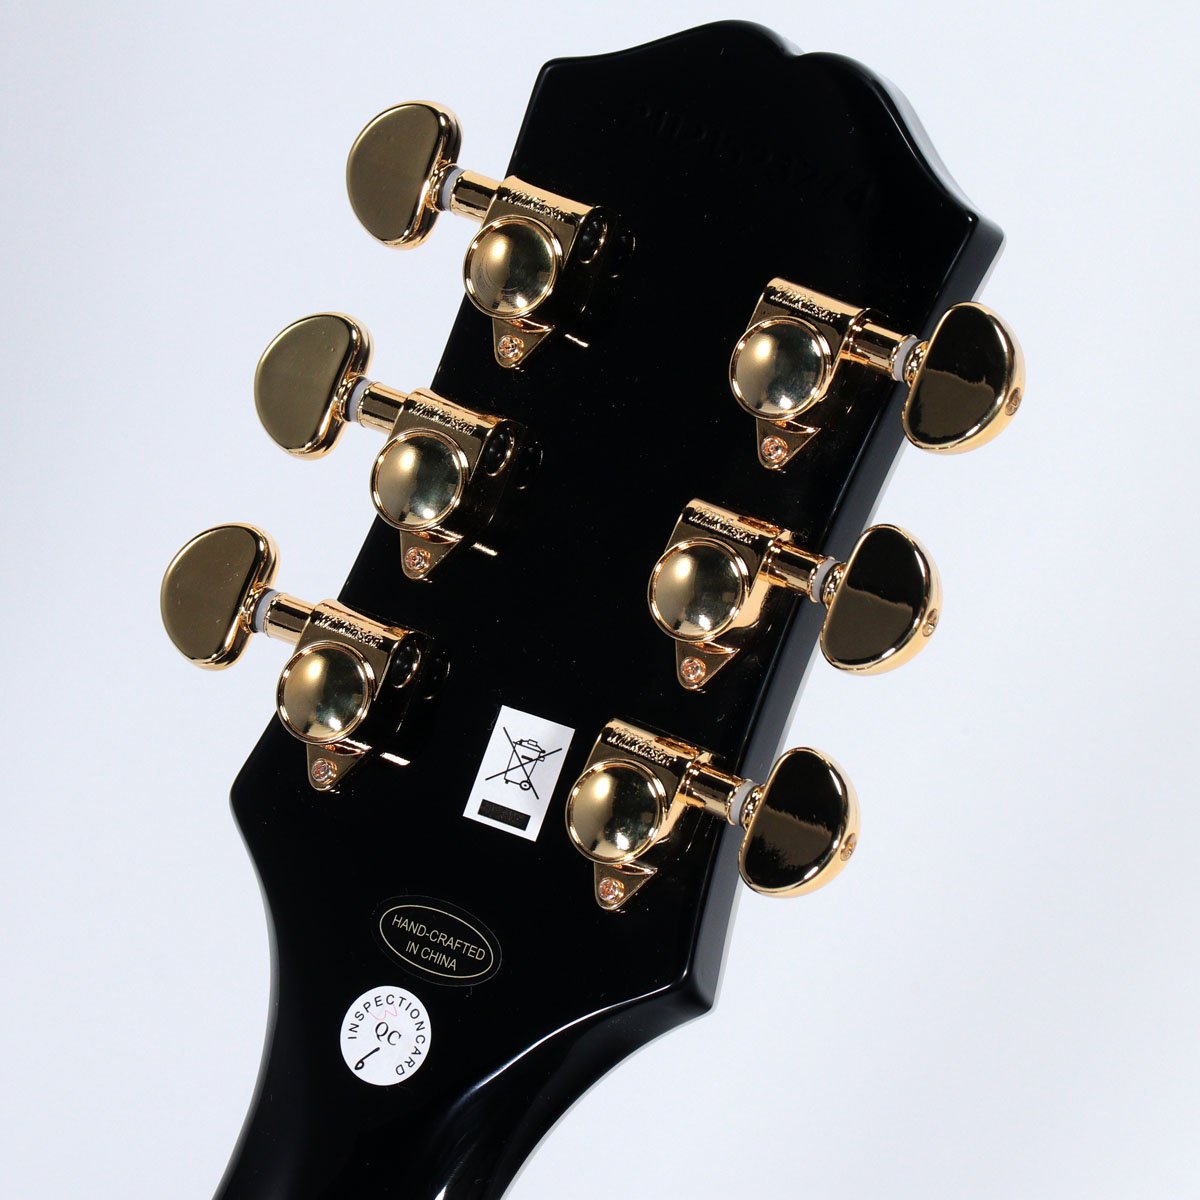 楽天市場】Epiphone / Inspired by Gibson Les Paul Custom Ebony